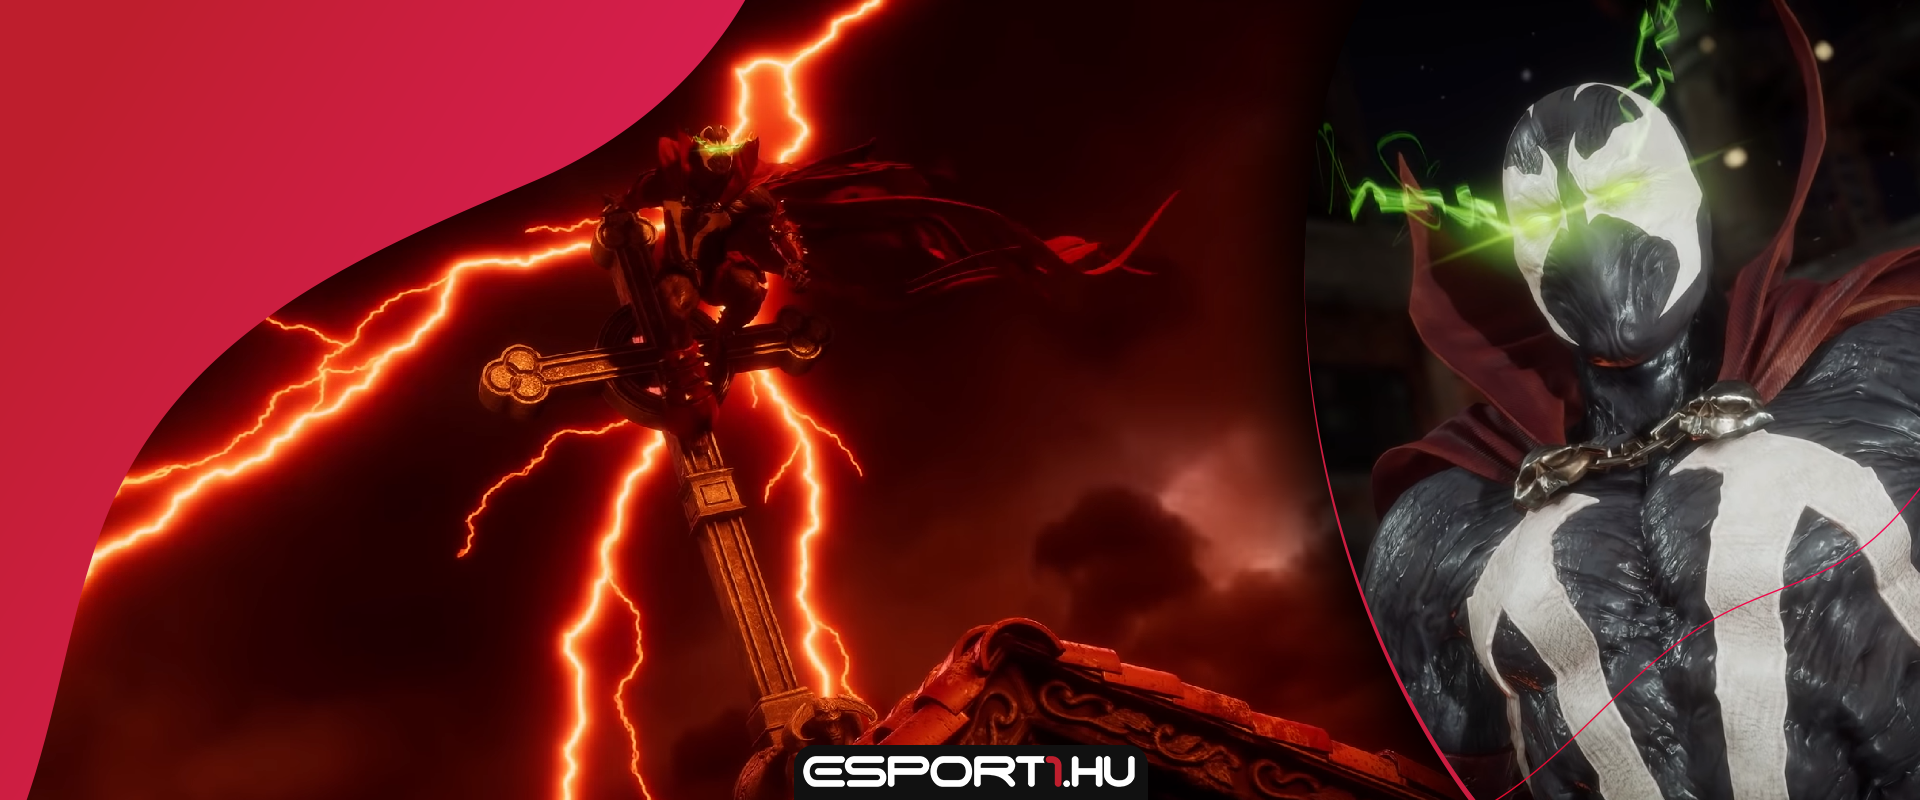 Láncokkal és karddal szedi szét a Mortal Kombat 11-ben ellenfeleit az ivadék!